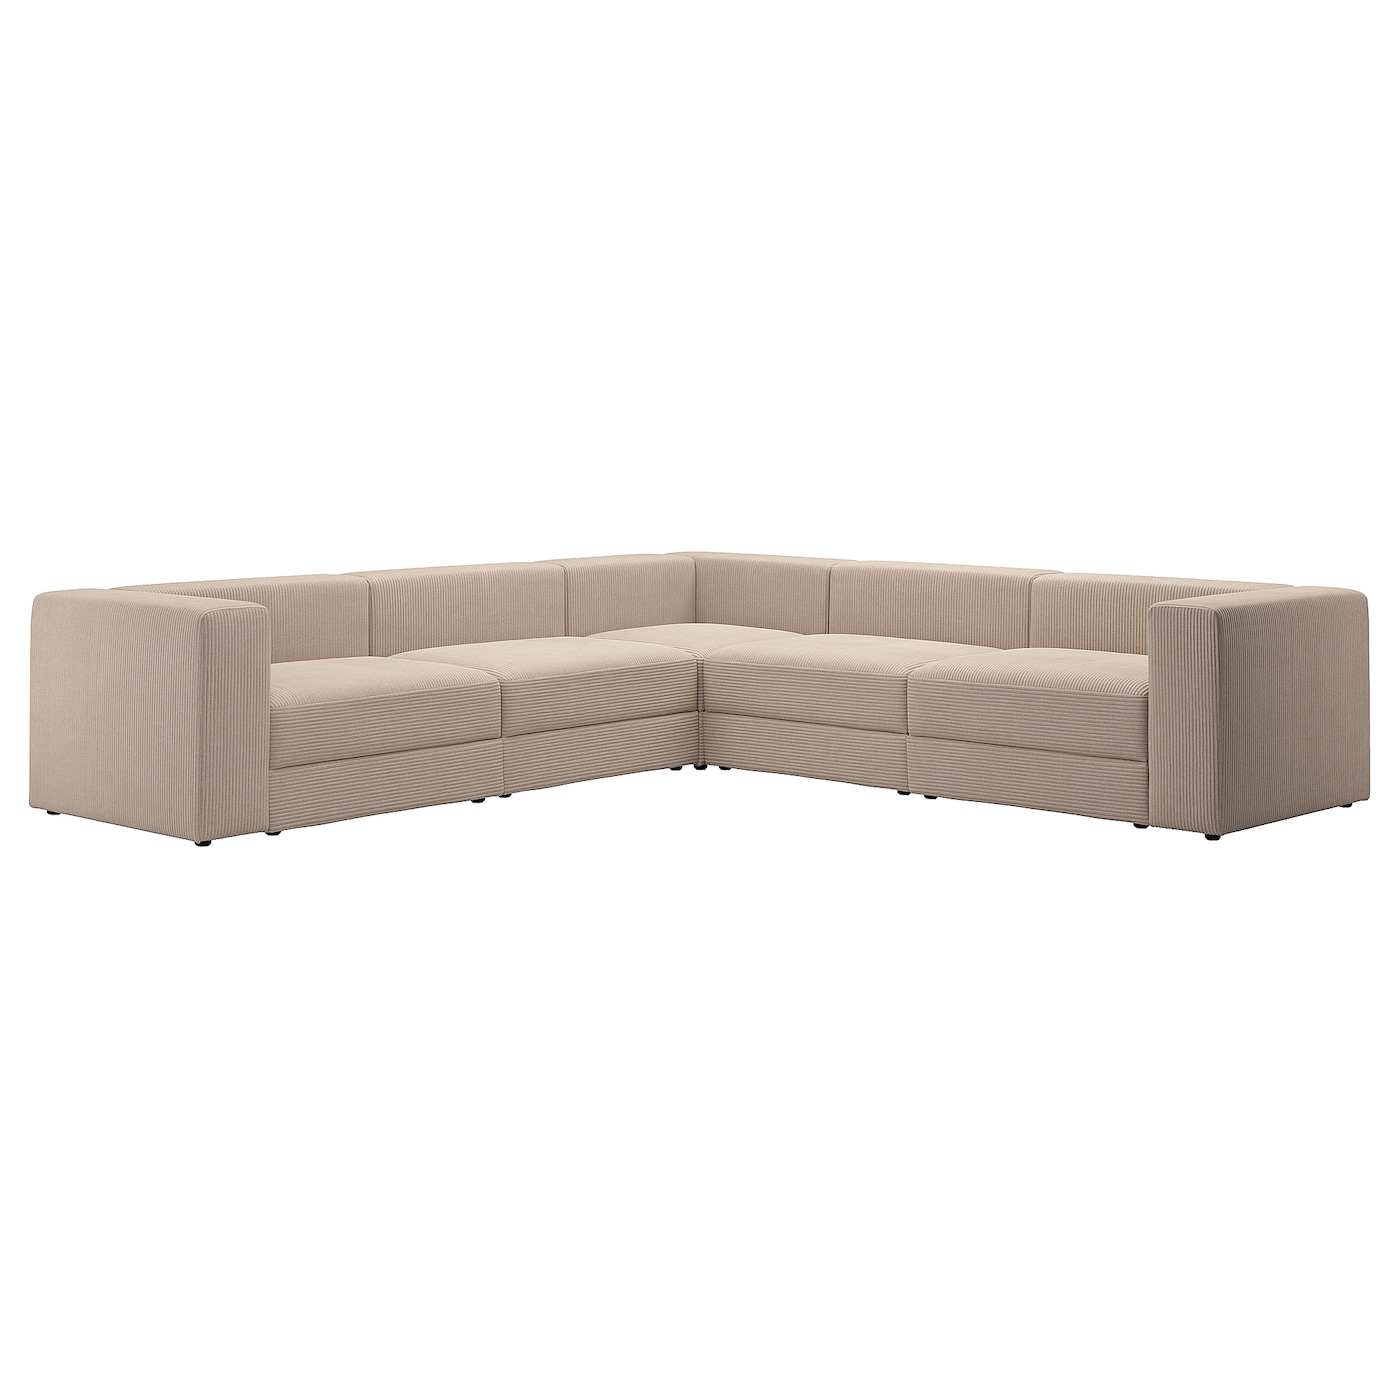 6-местный угловой диван - IKEA JÄTTEBO/JATTEBO, 71x95x310см, бежевый,/светло-коричневый, ЙЕТТЕБО ИКЕА